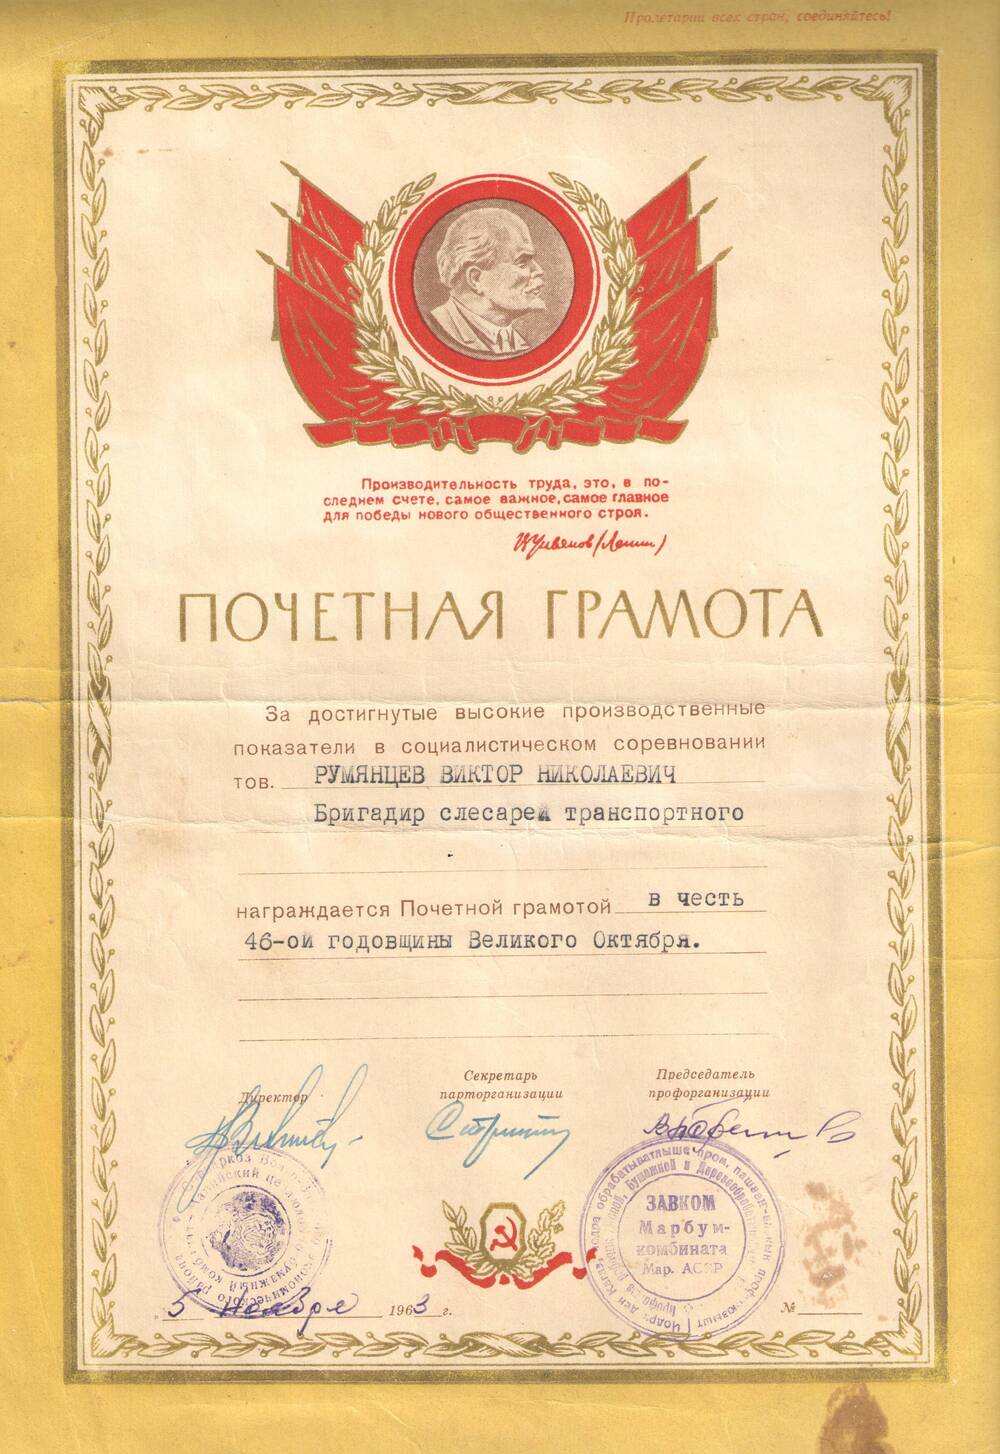 Грамота почетная Марбумкомбината на имя Румянцева В.Н. в честь 46-й годовщины Великого Октября